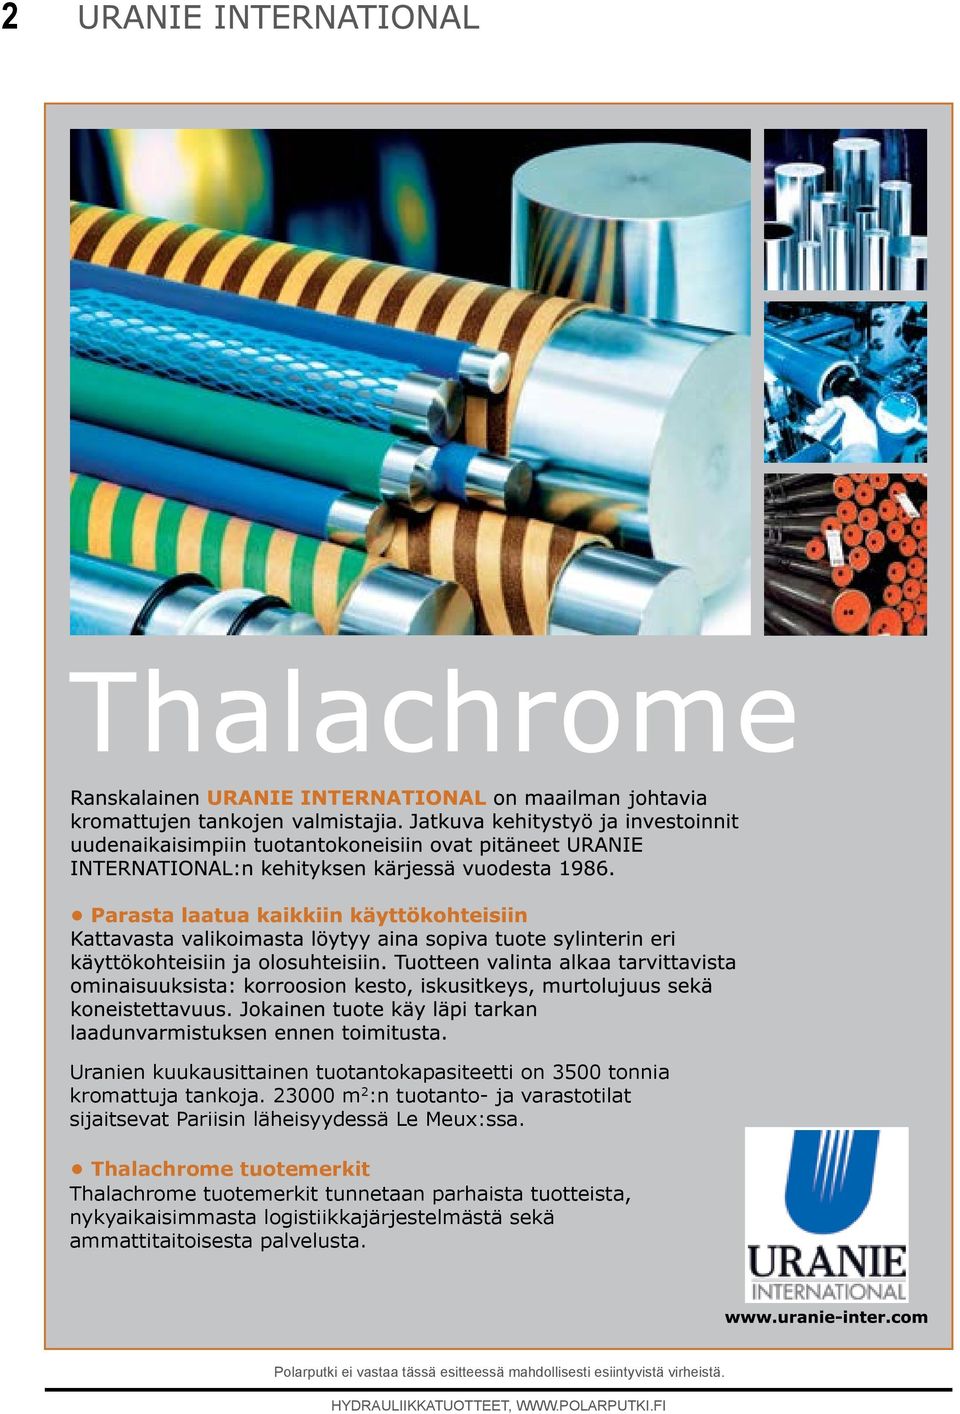 Thalachrome tuotemerkit Thalachrome tuotemerkit tunnetaan parhaista tuotteista, nykyaikaisiasta